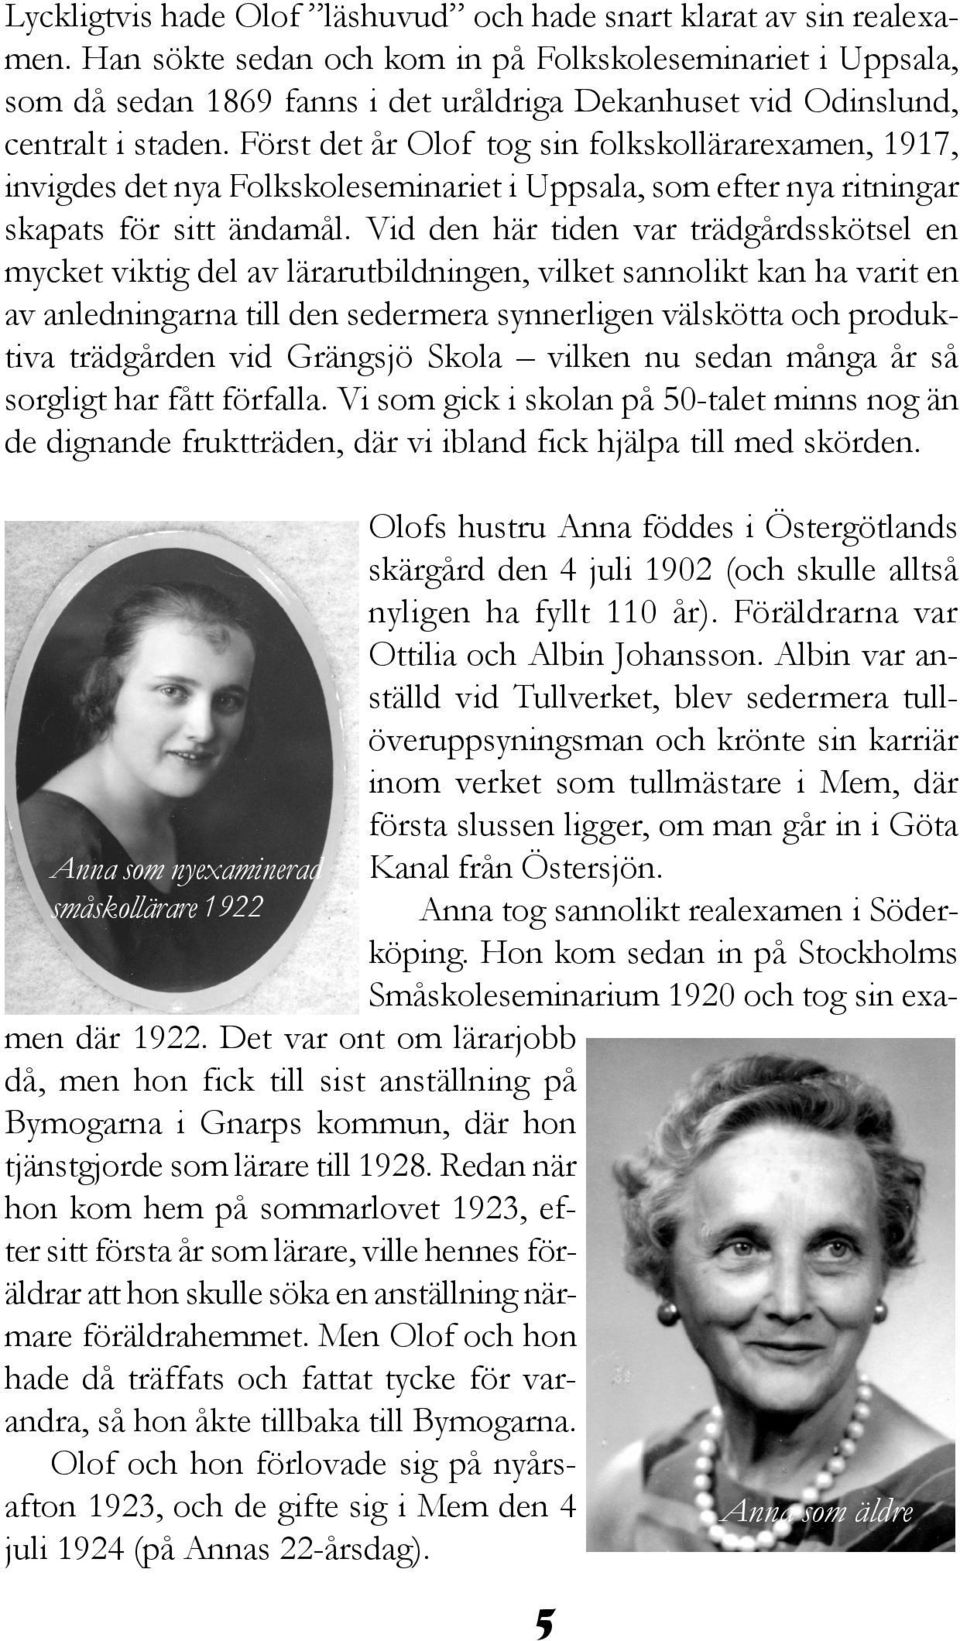 Först det år Olof tog sin folkskollärarexamen, 1917, invigdes det nya Folkskoleseminariet i Uppsala, som efter nya ritningar skapats för sitt ändamål.